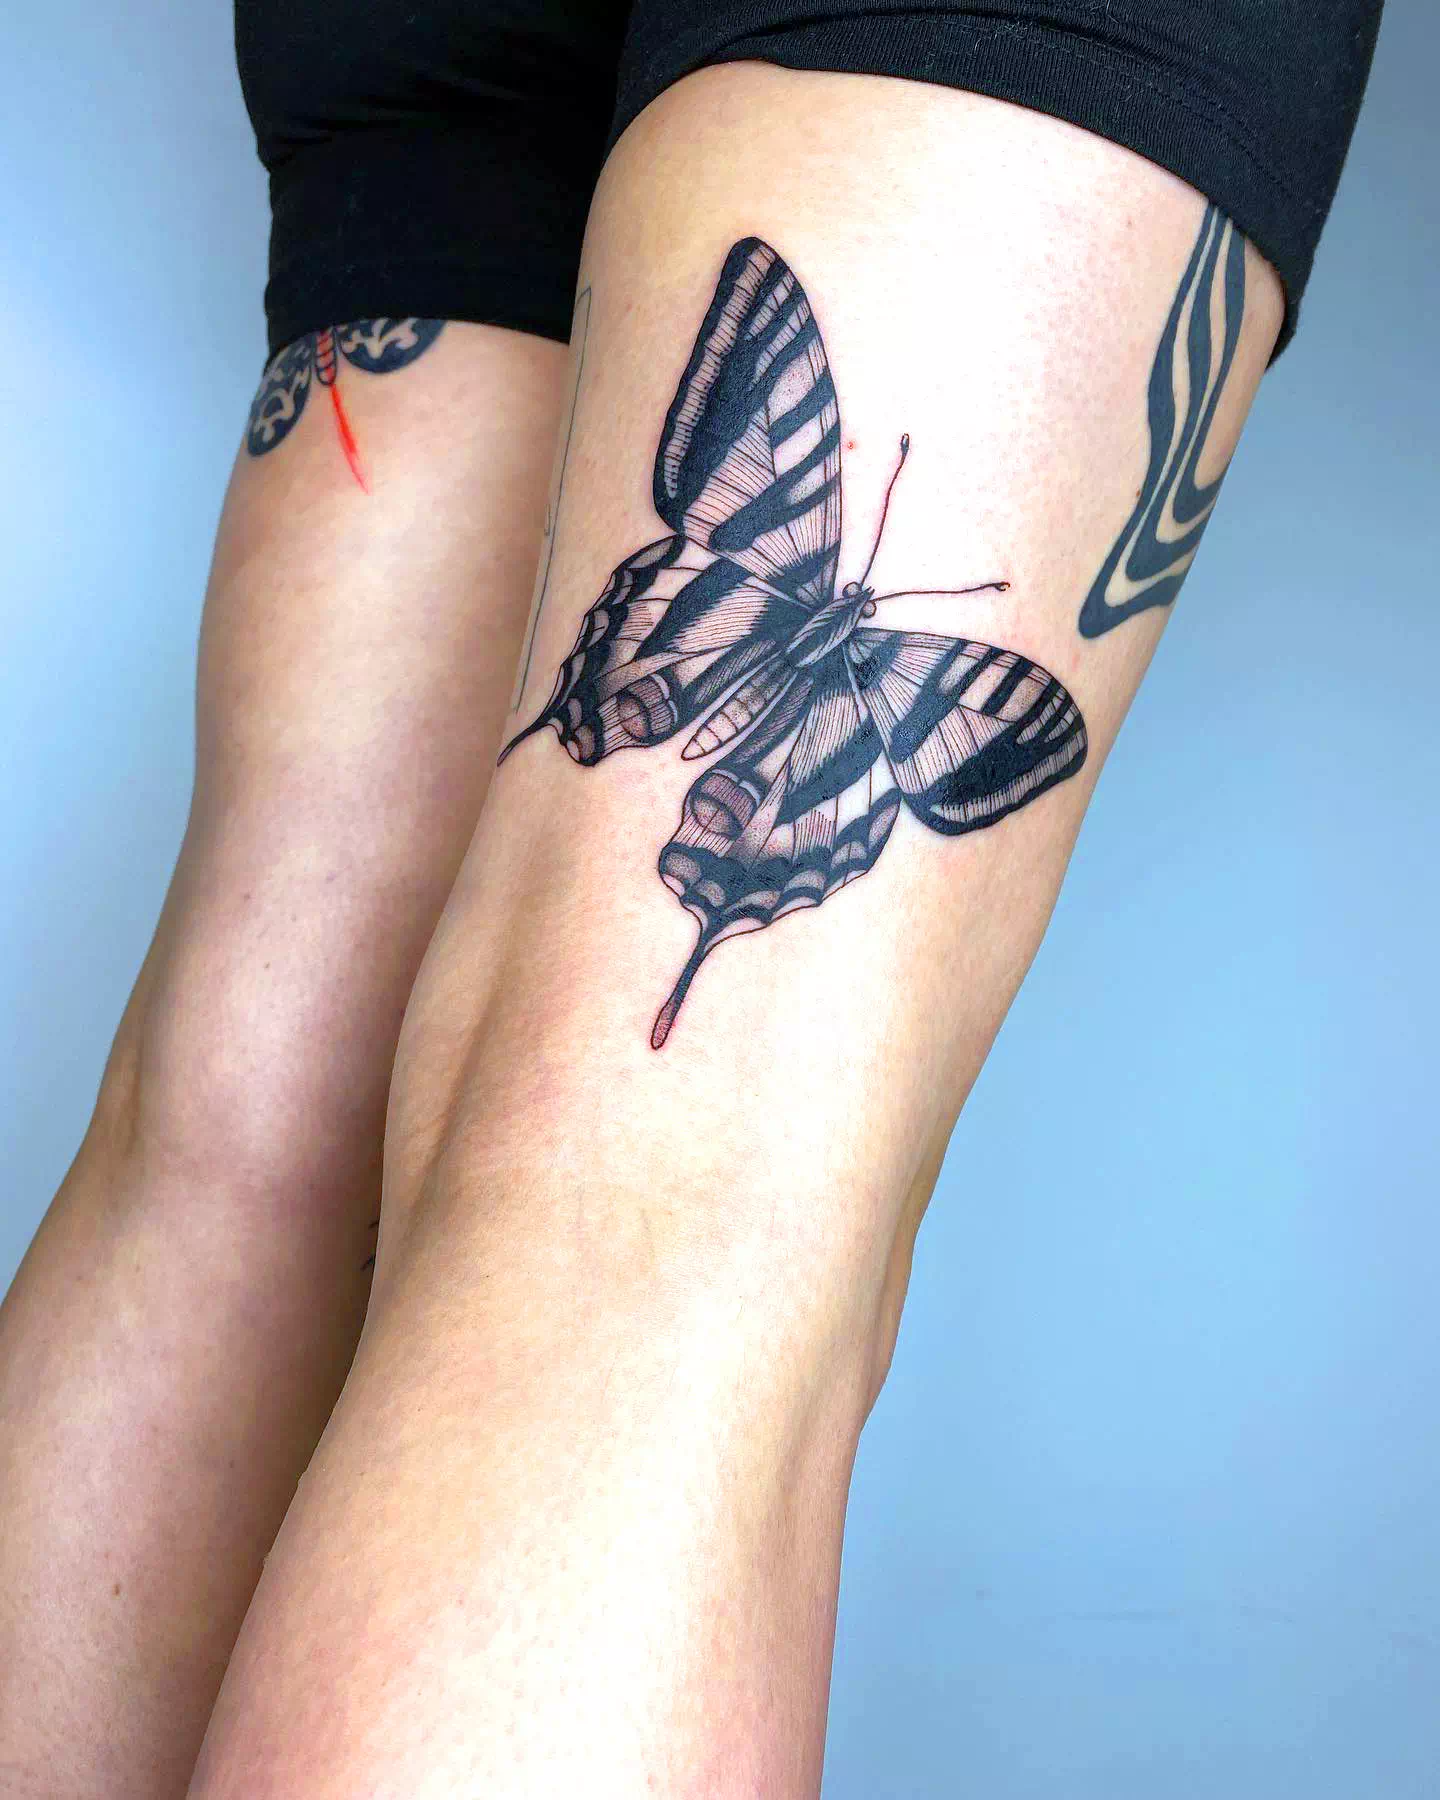 Butterfly Calf Tattoo Ideas